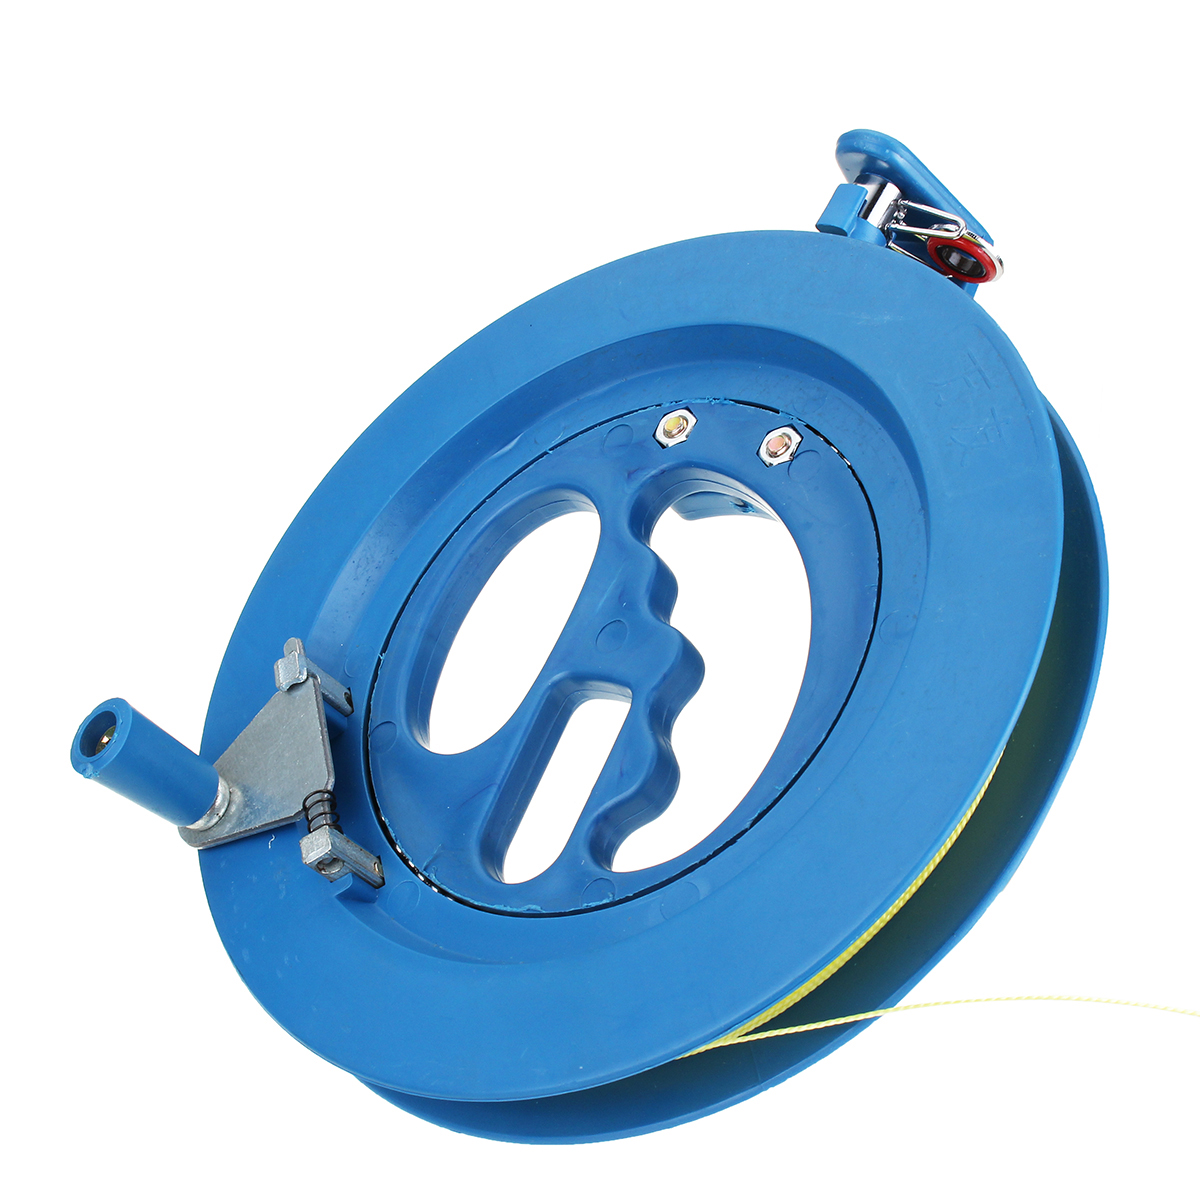 Blue-Kite-Line-Winder-Winding-Reel-100M-String-Grip-Wheel-Flying-Tools-amp-Lock-1365842